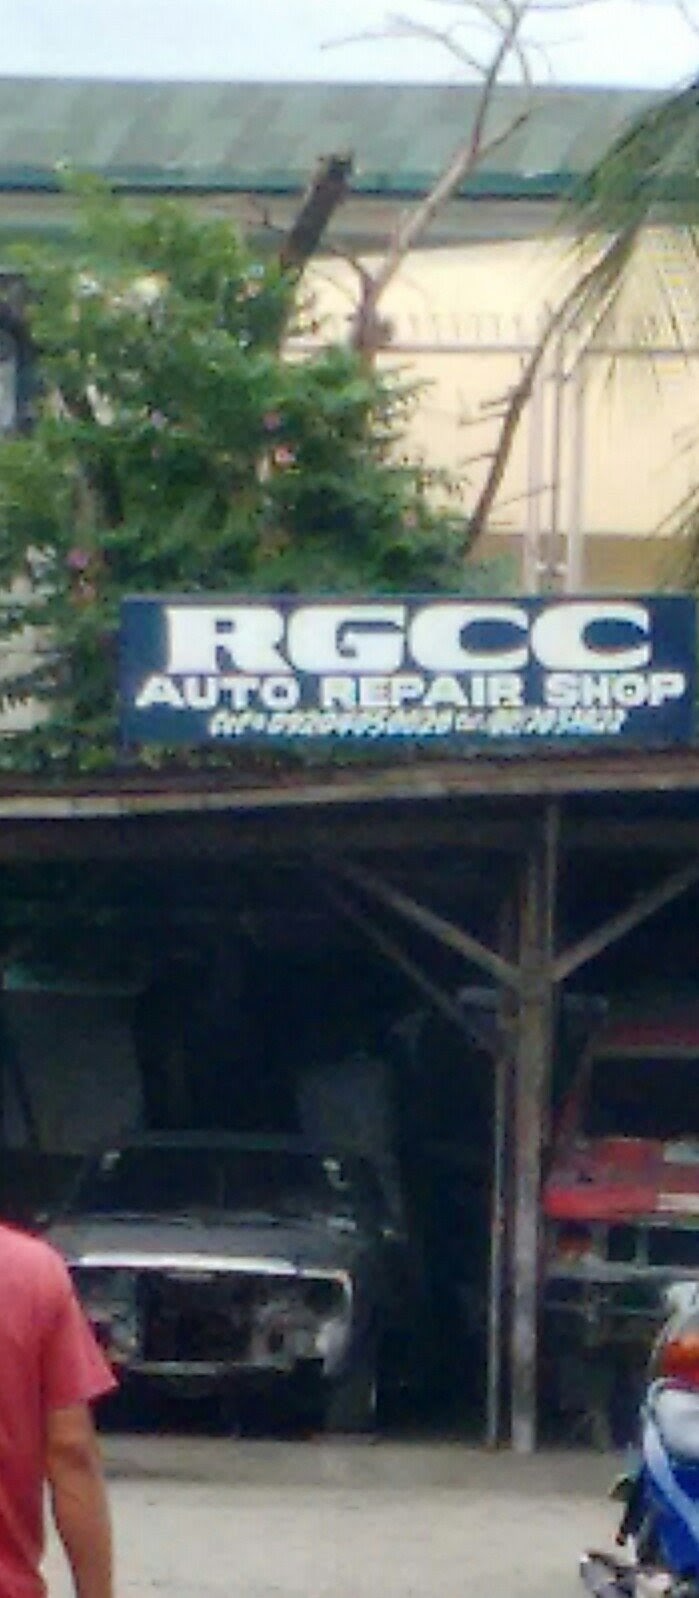 RGCC Auto Repair Shop